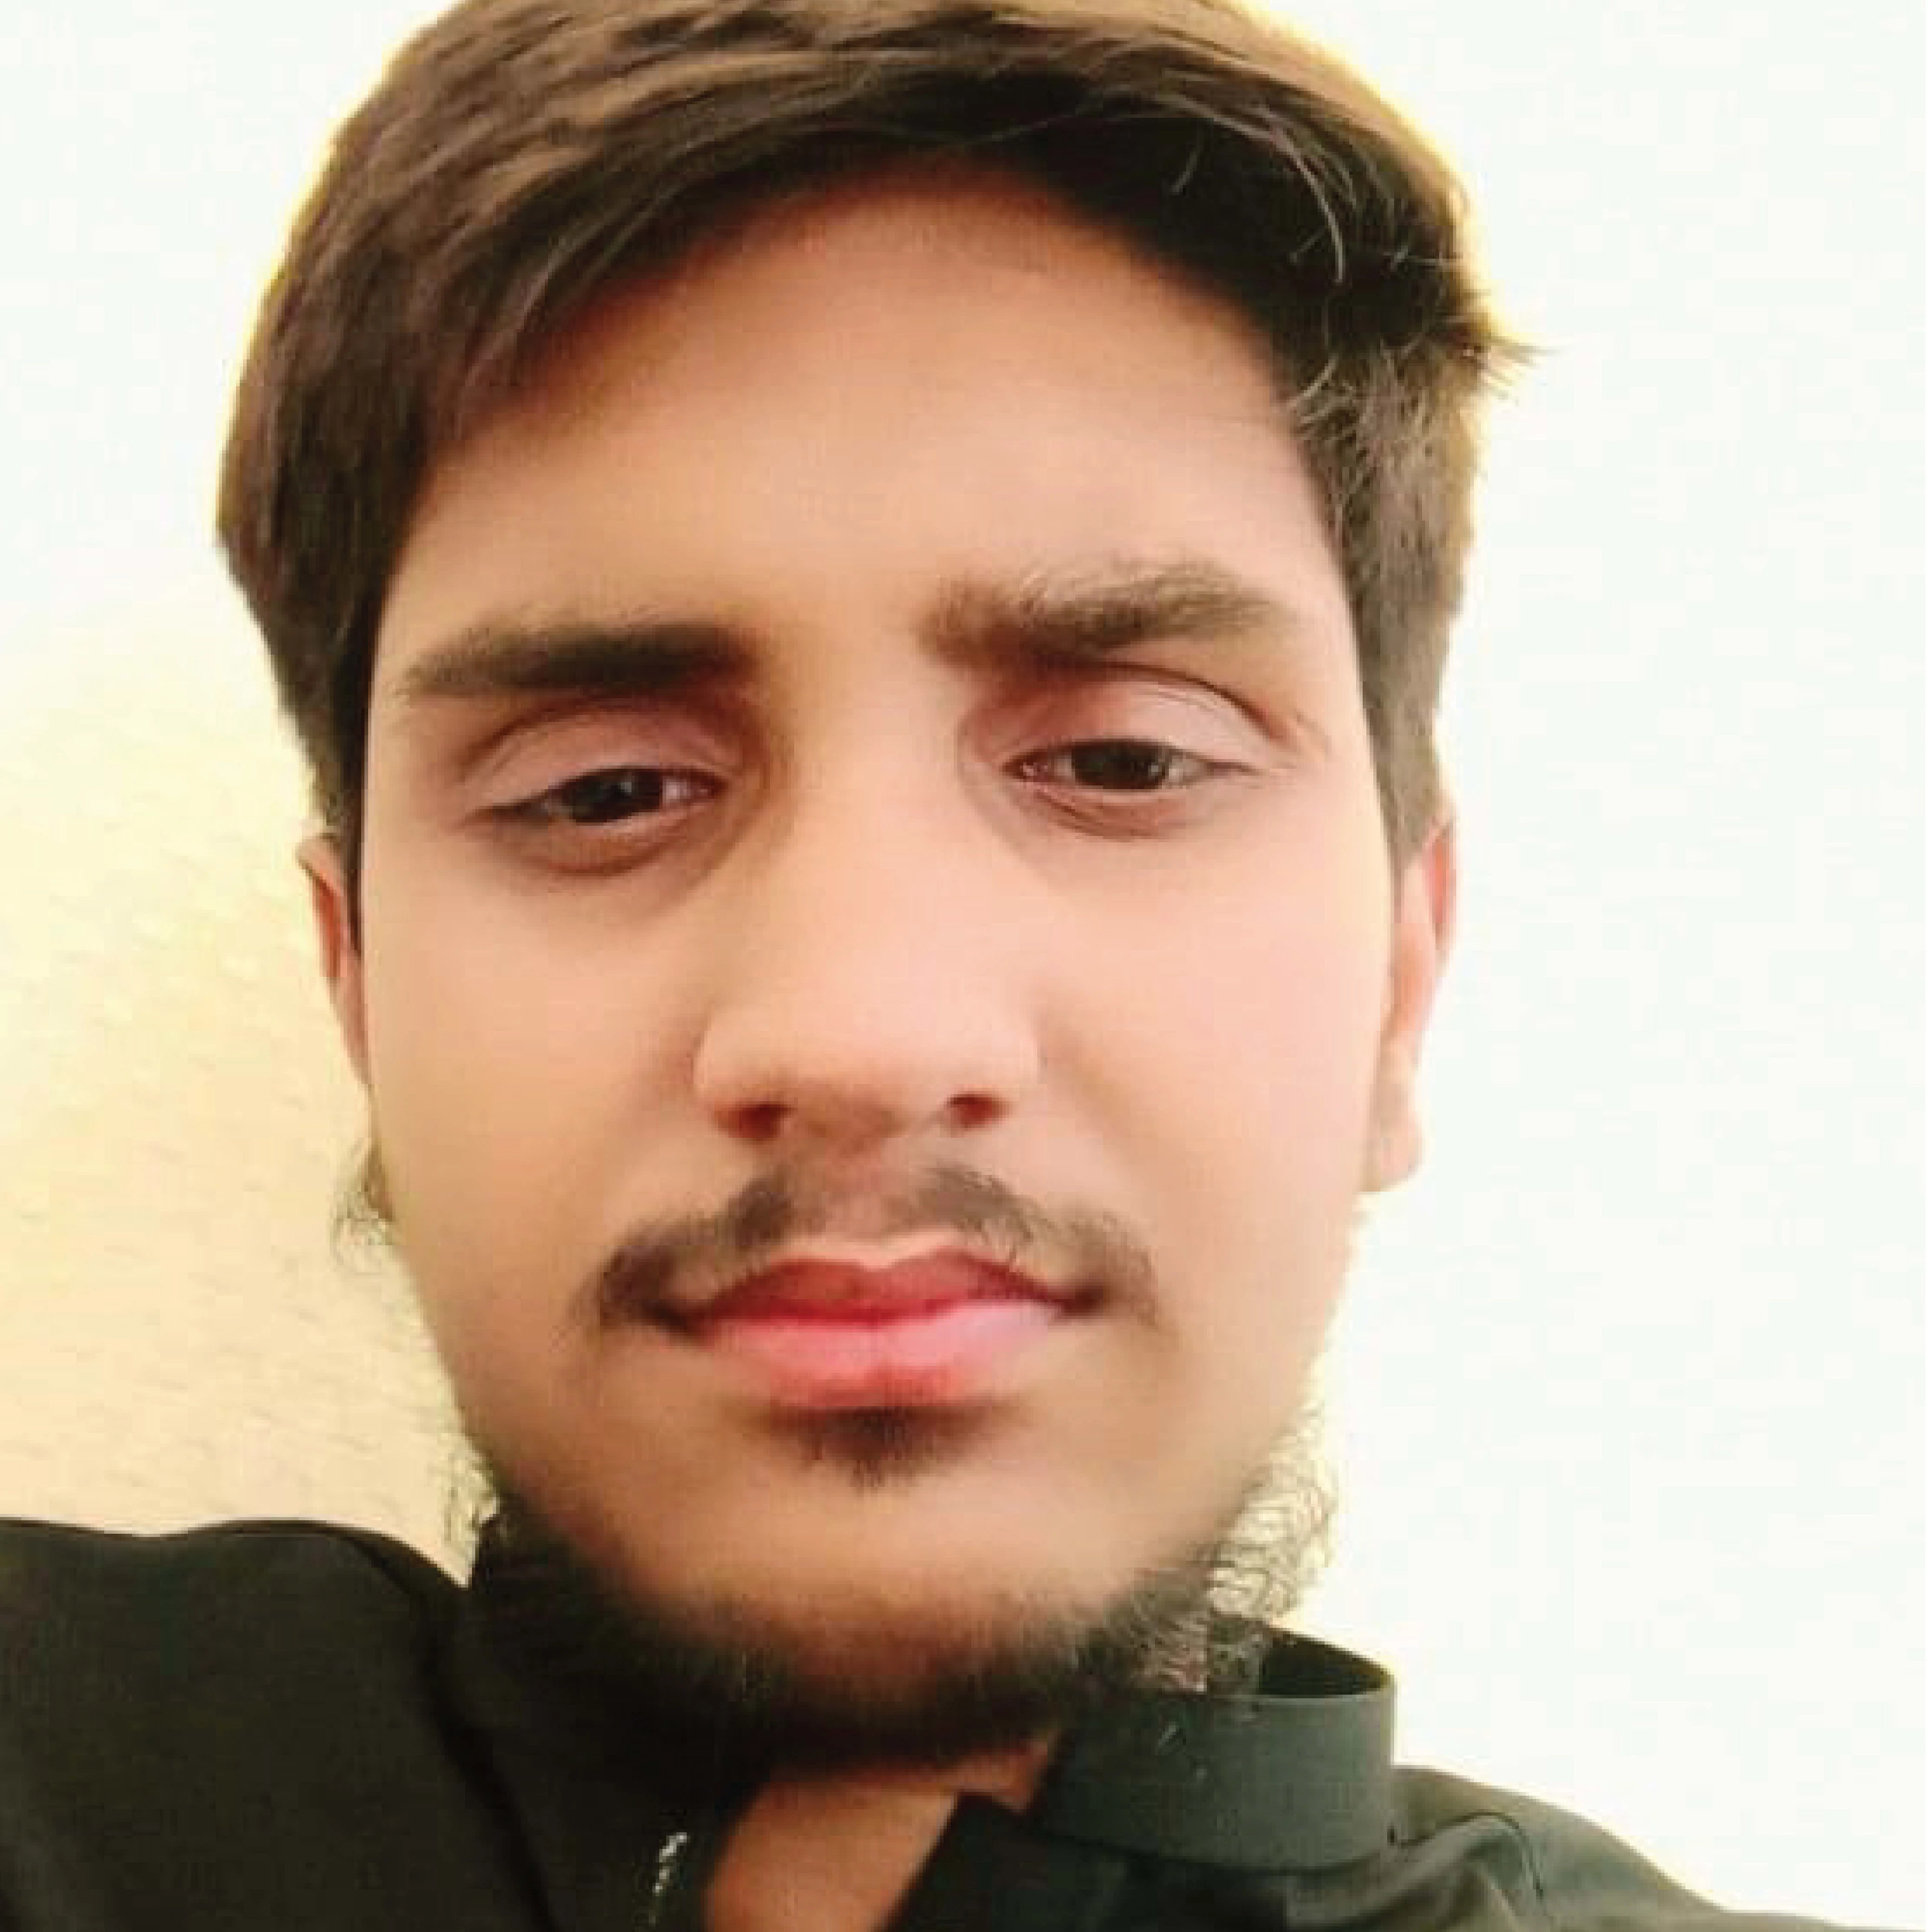 Abdul Rehman's avatar